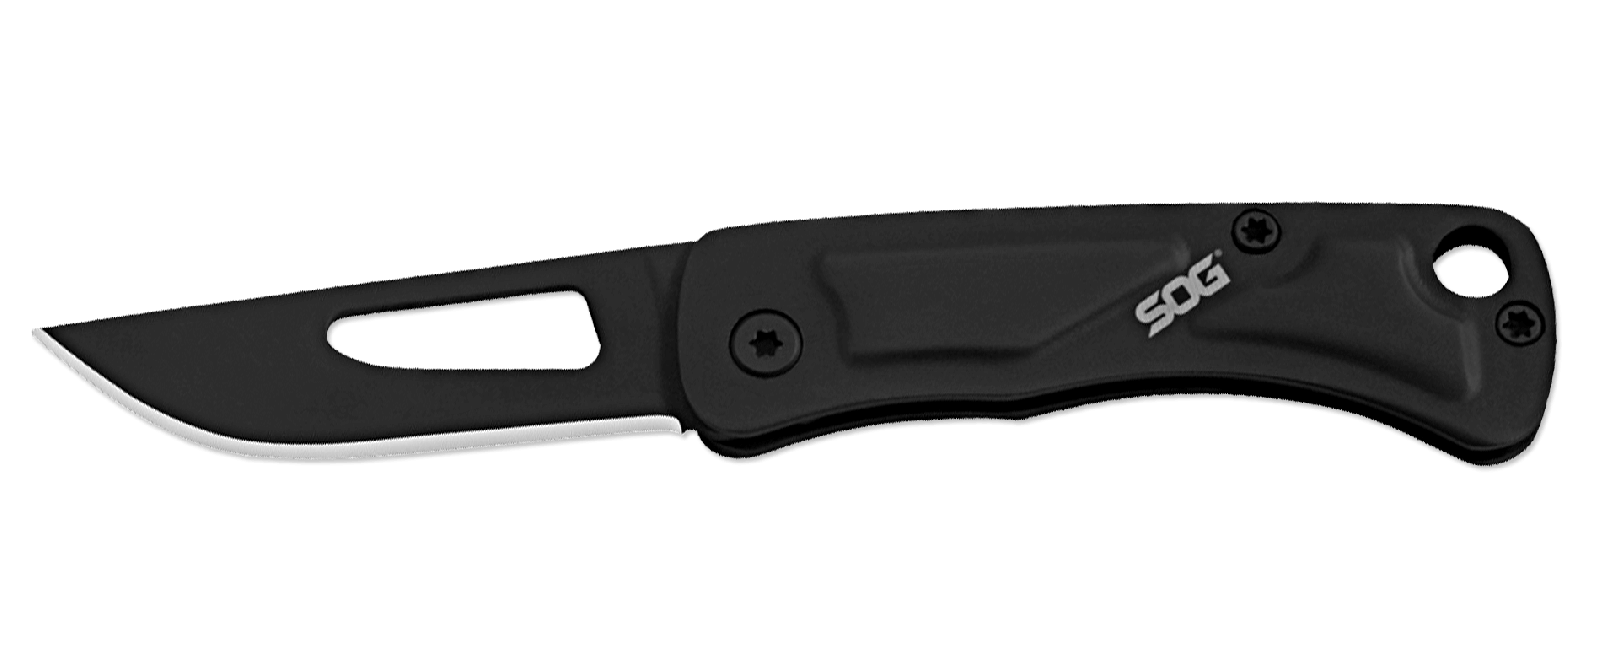 Складной нож Centi I - SOG CE1002, сталь 3Cr13MoV, рукоять нержавеющая сталь, чёрный